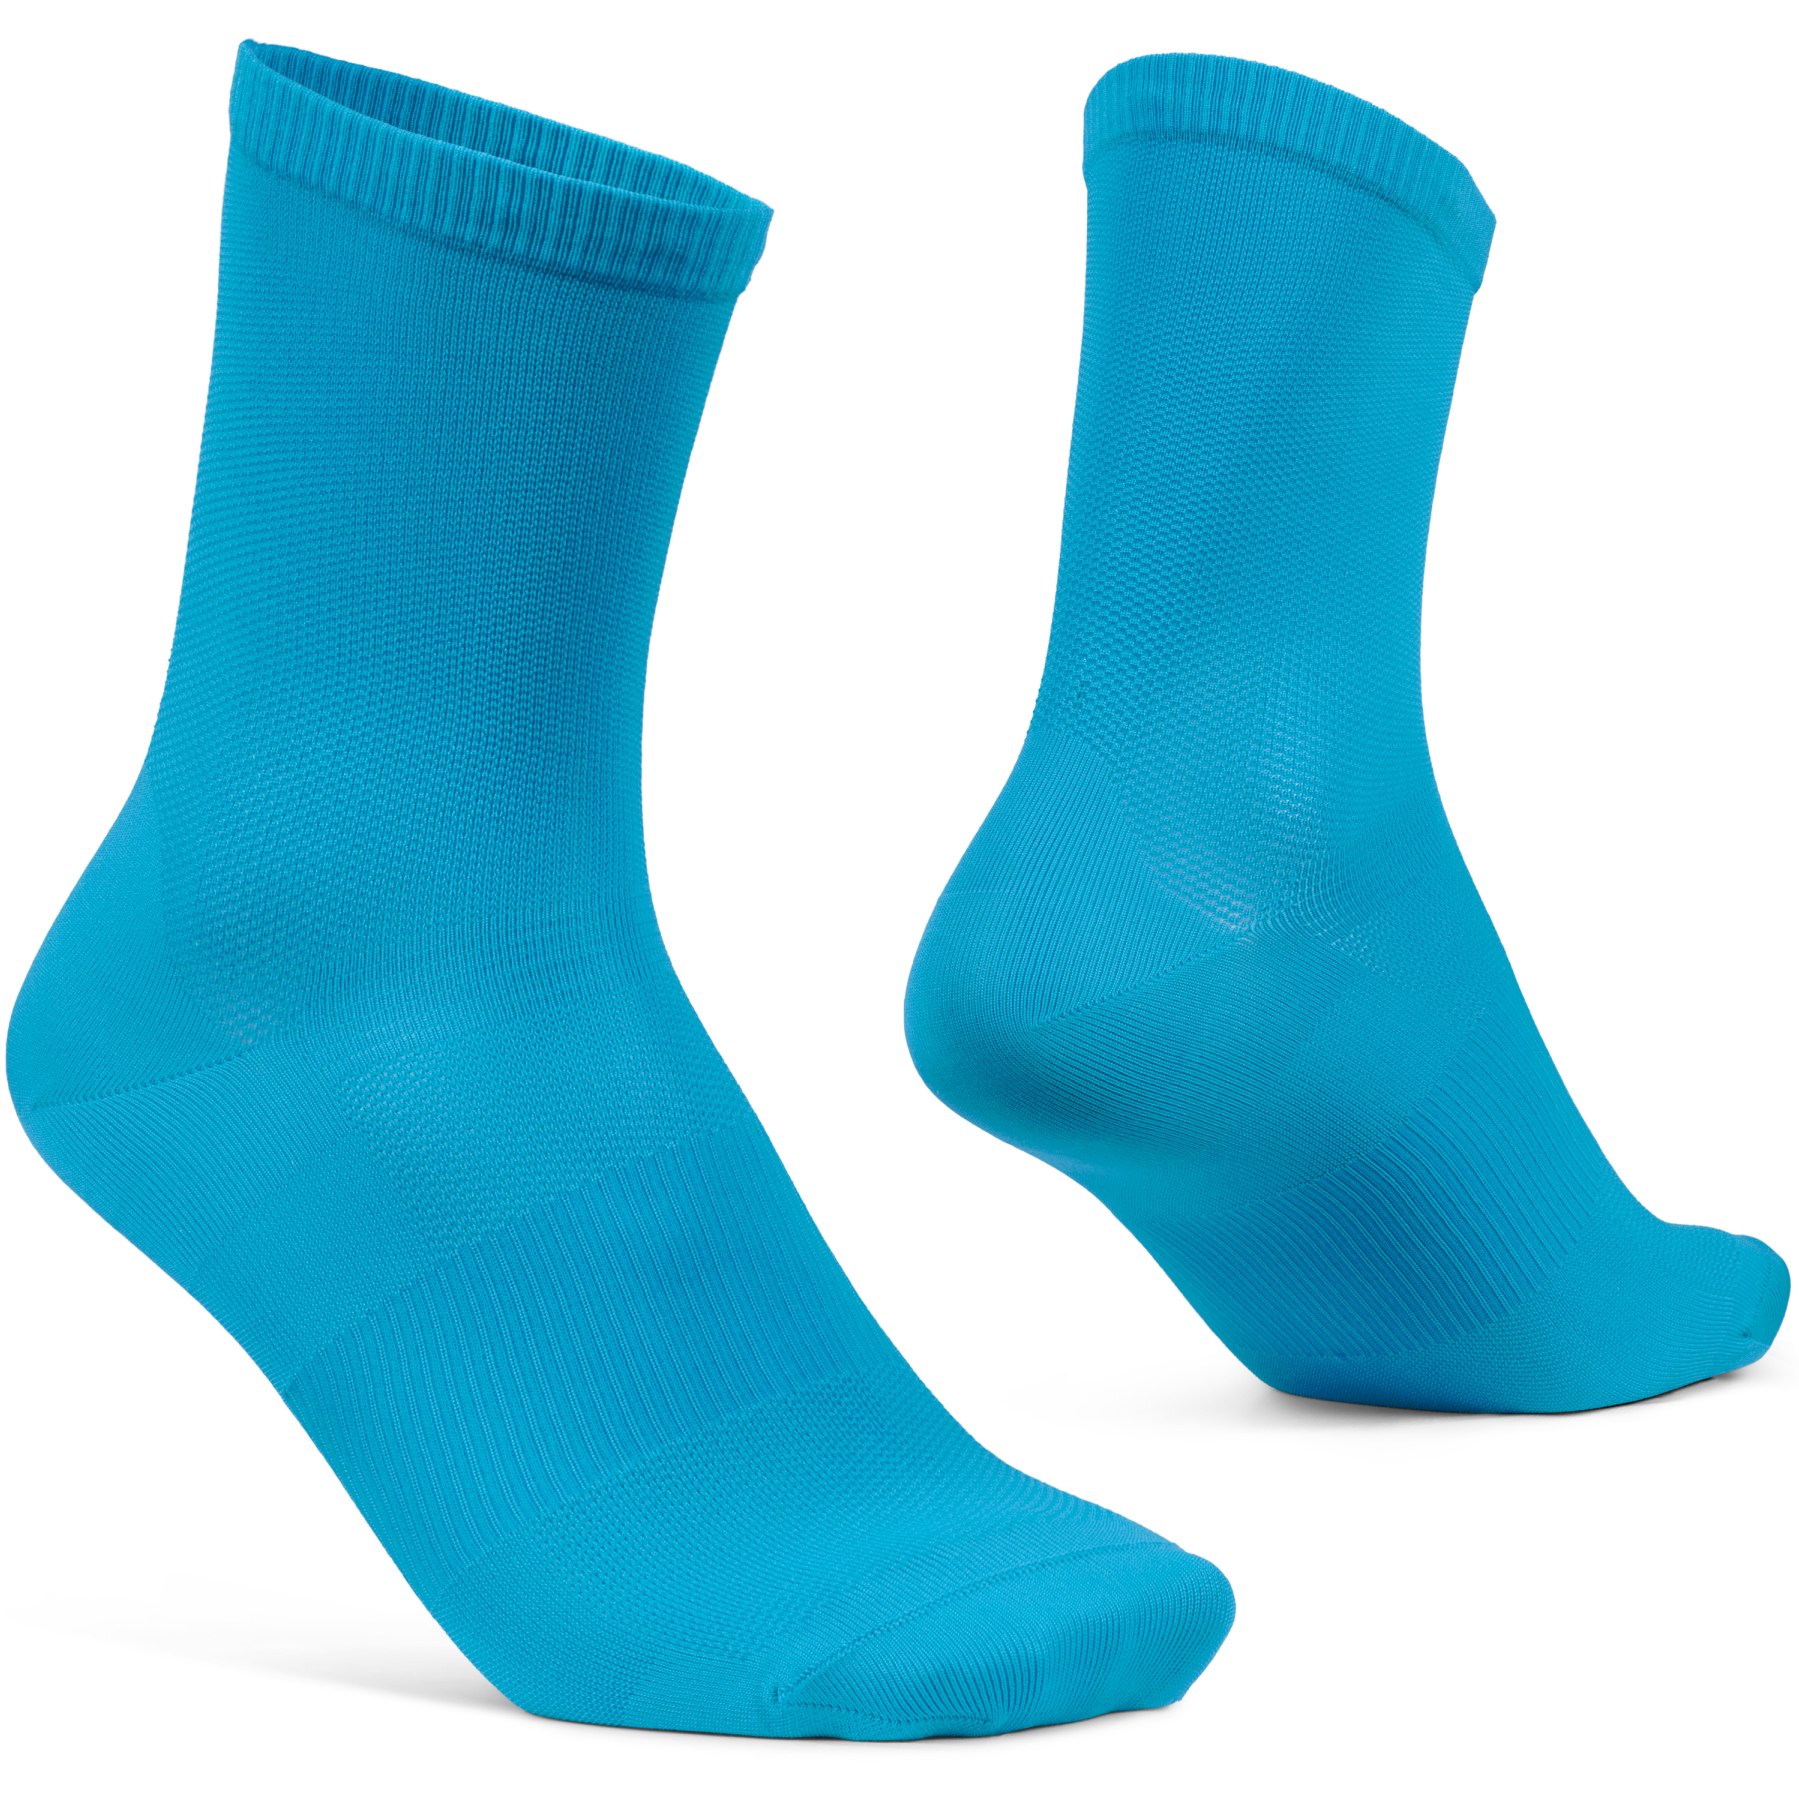 Produktbild von GripGrab Lightweight Airflow Socken - Blau